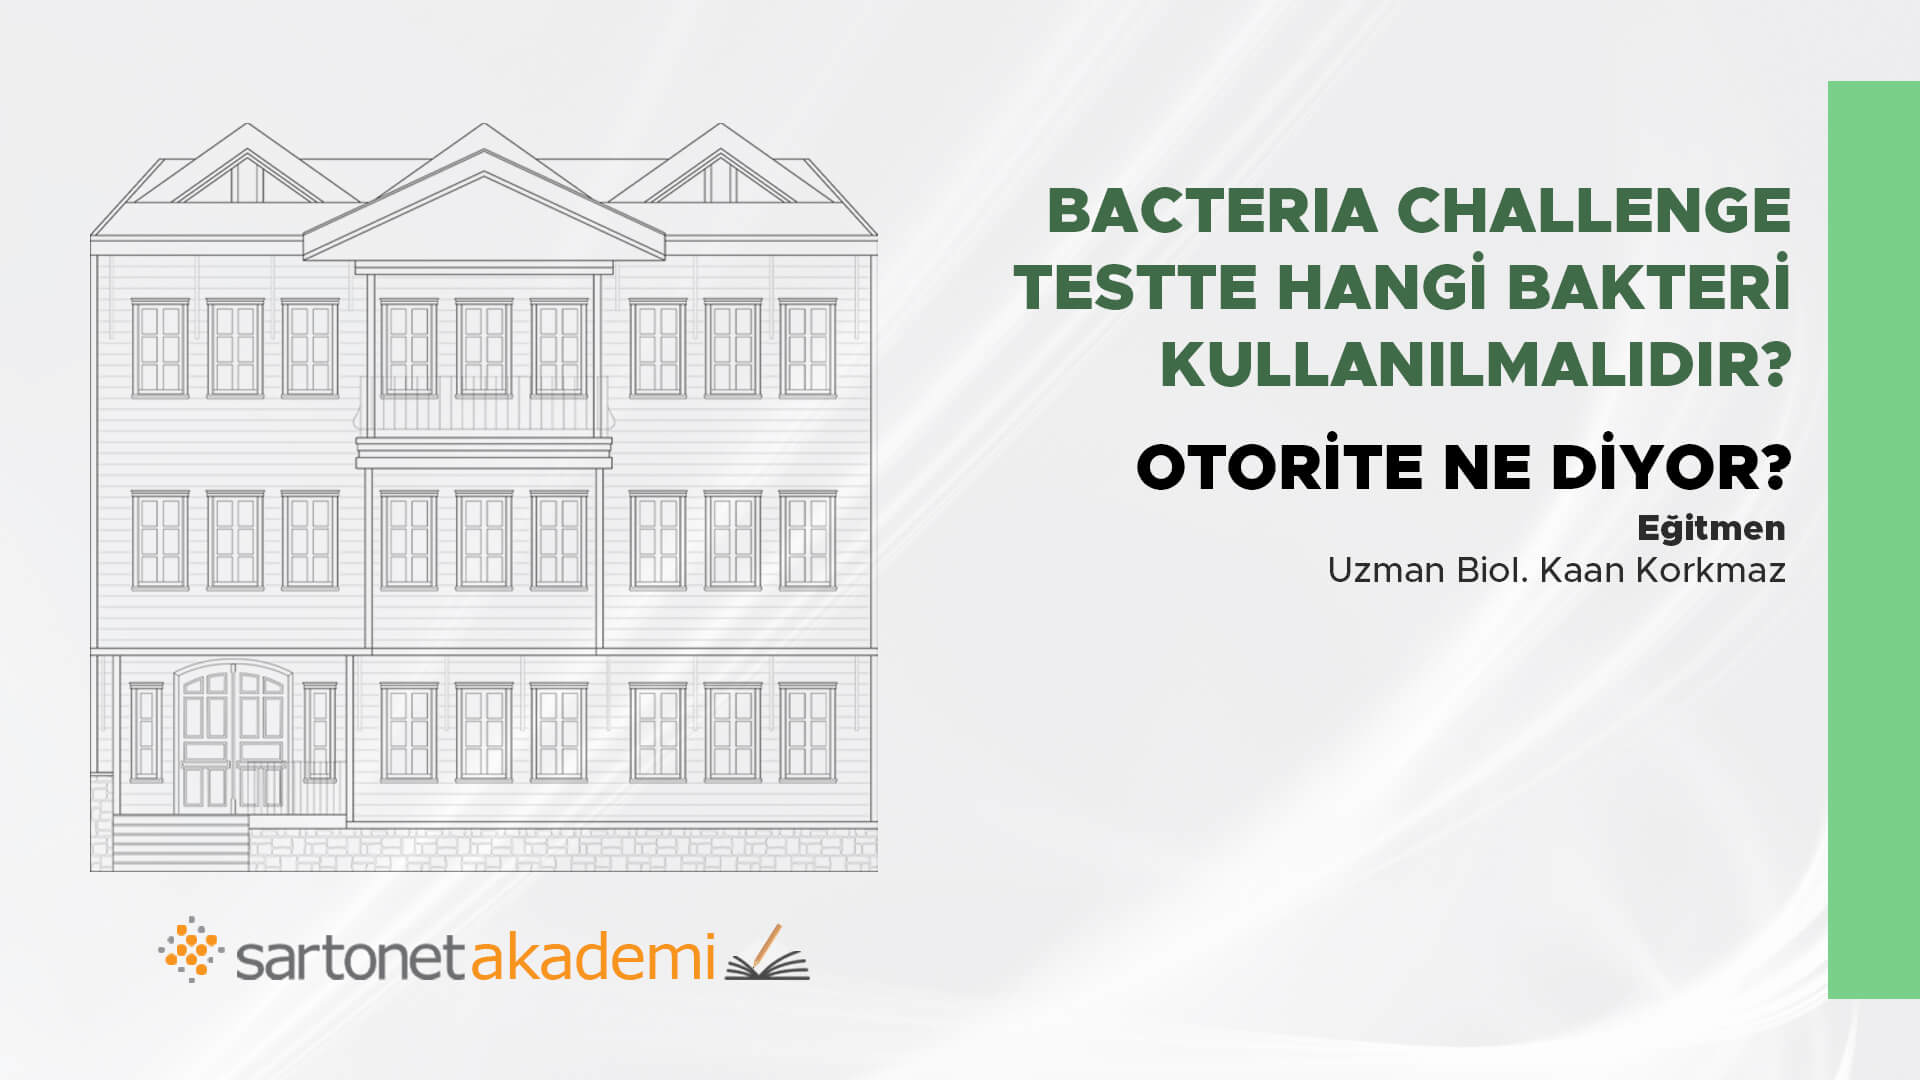 Bacteria Challenge Testte hangi bakteri kullanılmalıdır? Otorite ne diyor?